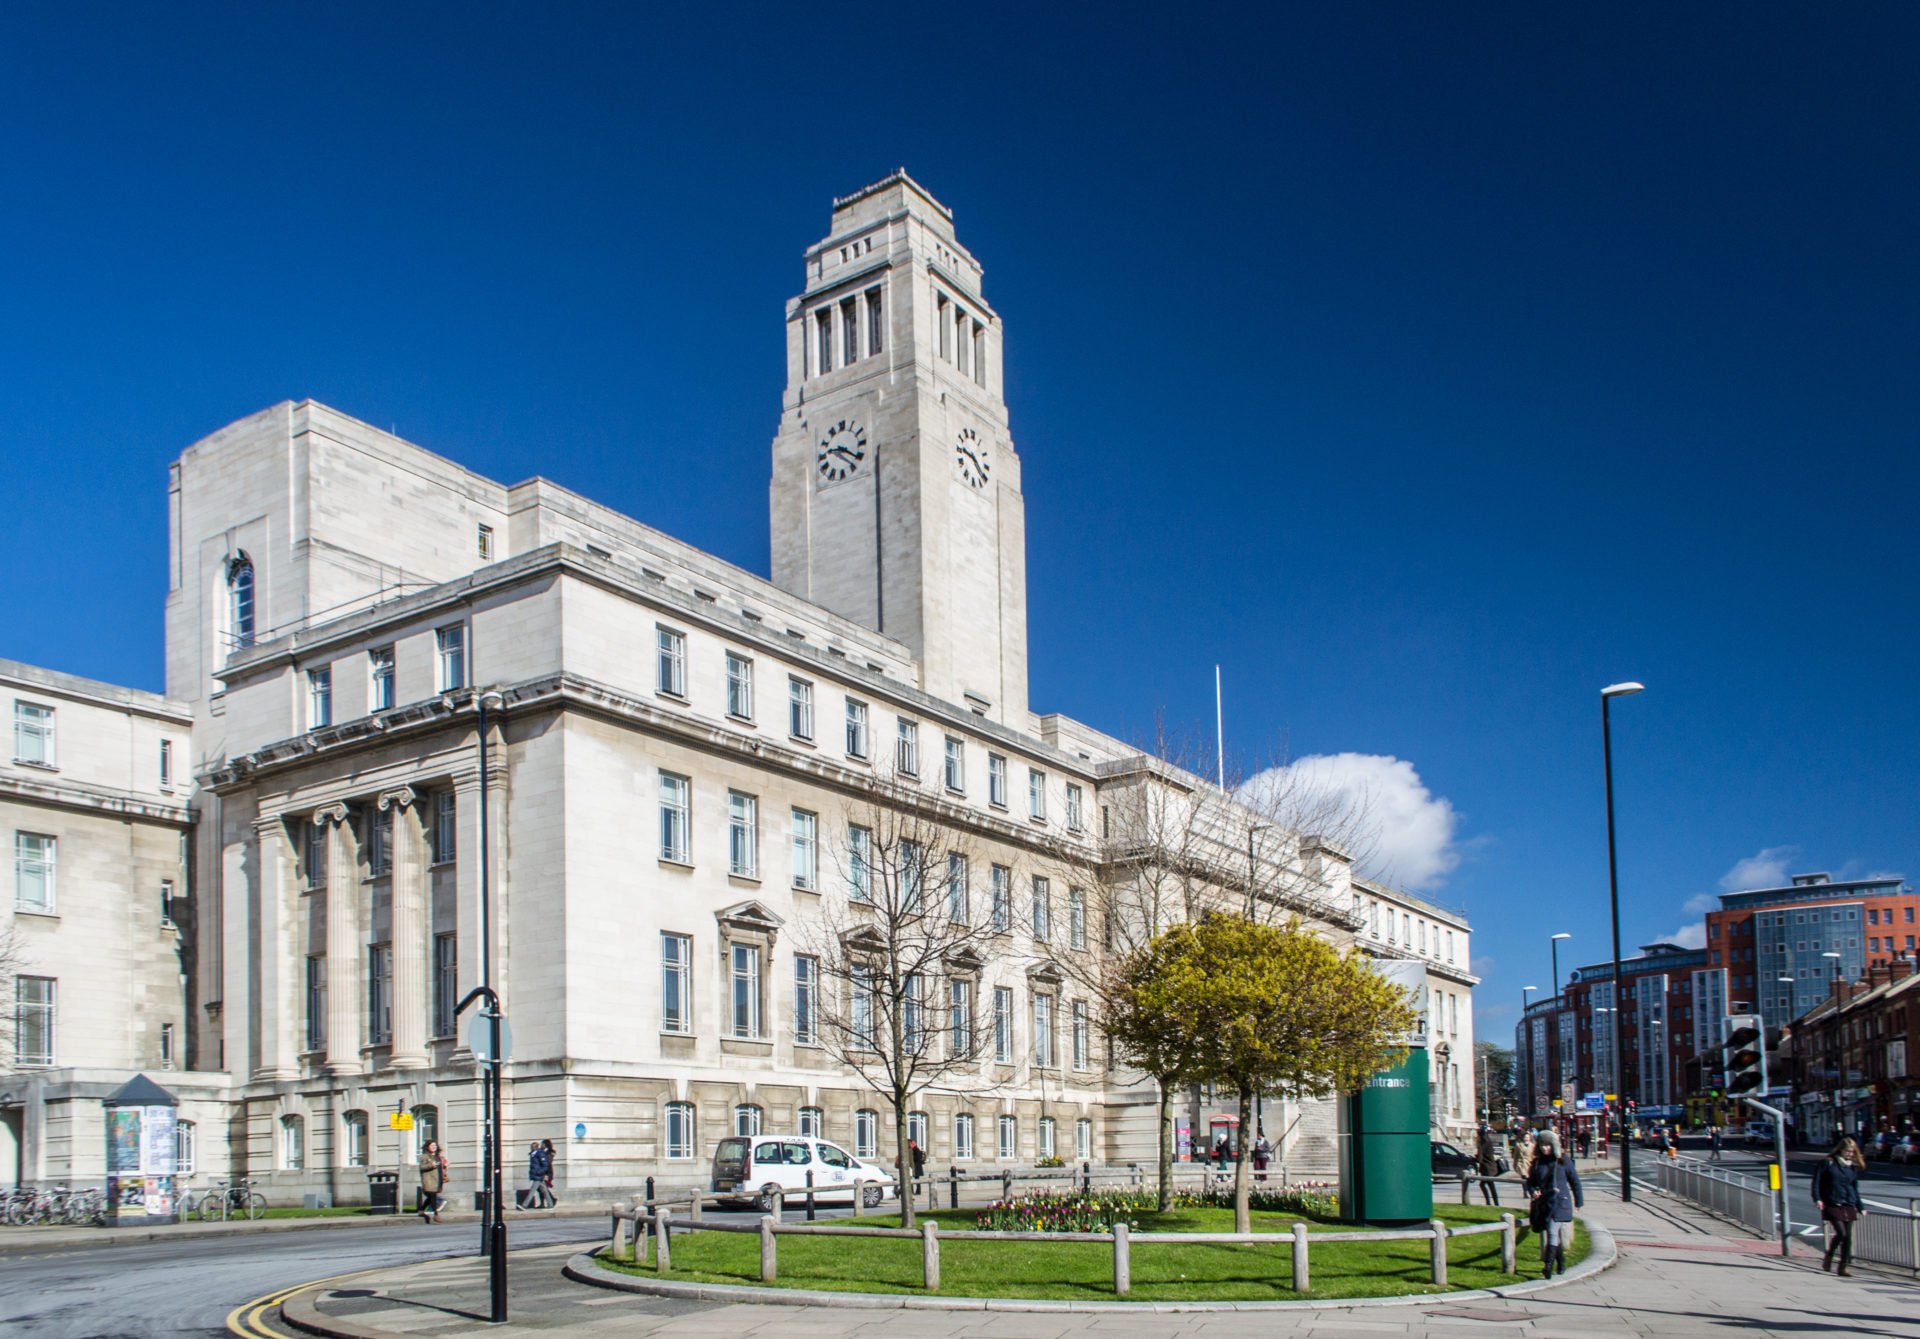 University of Leeds Parkinson Building